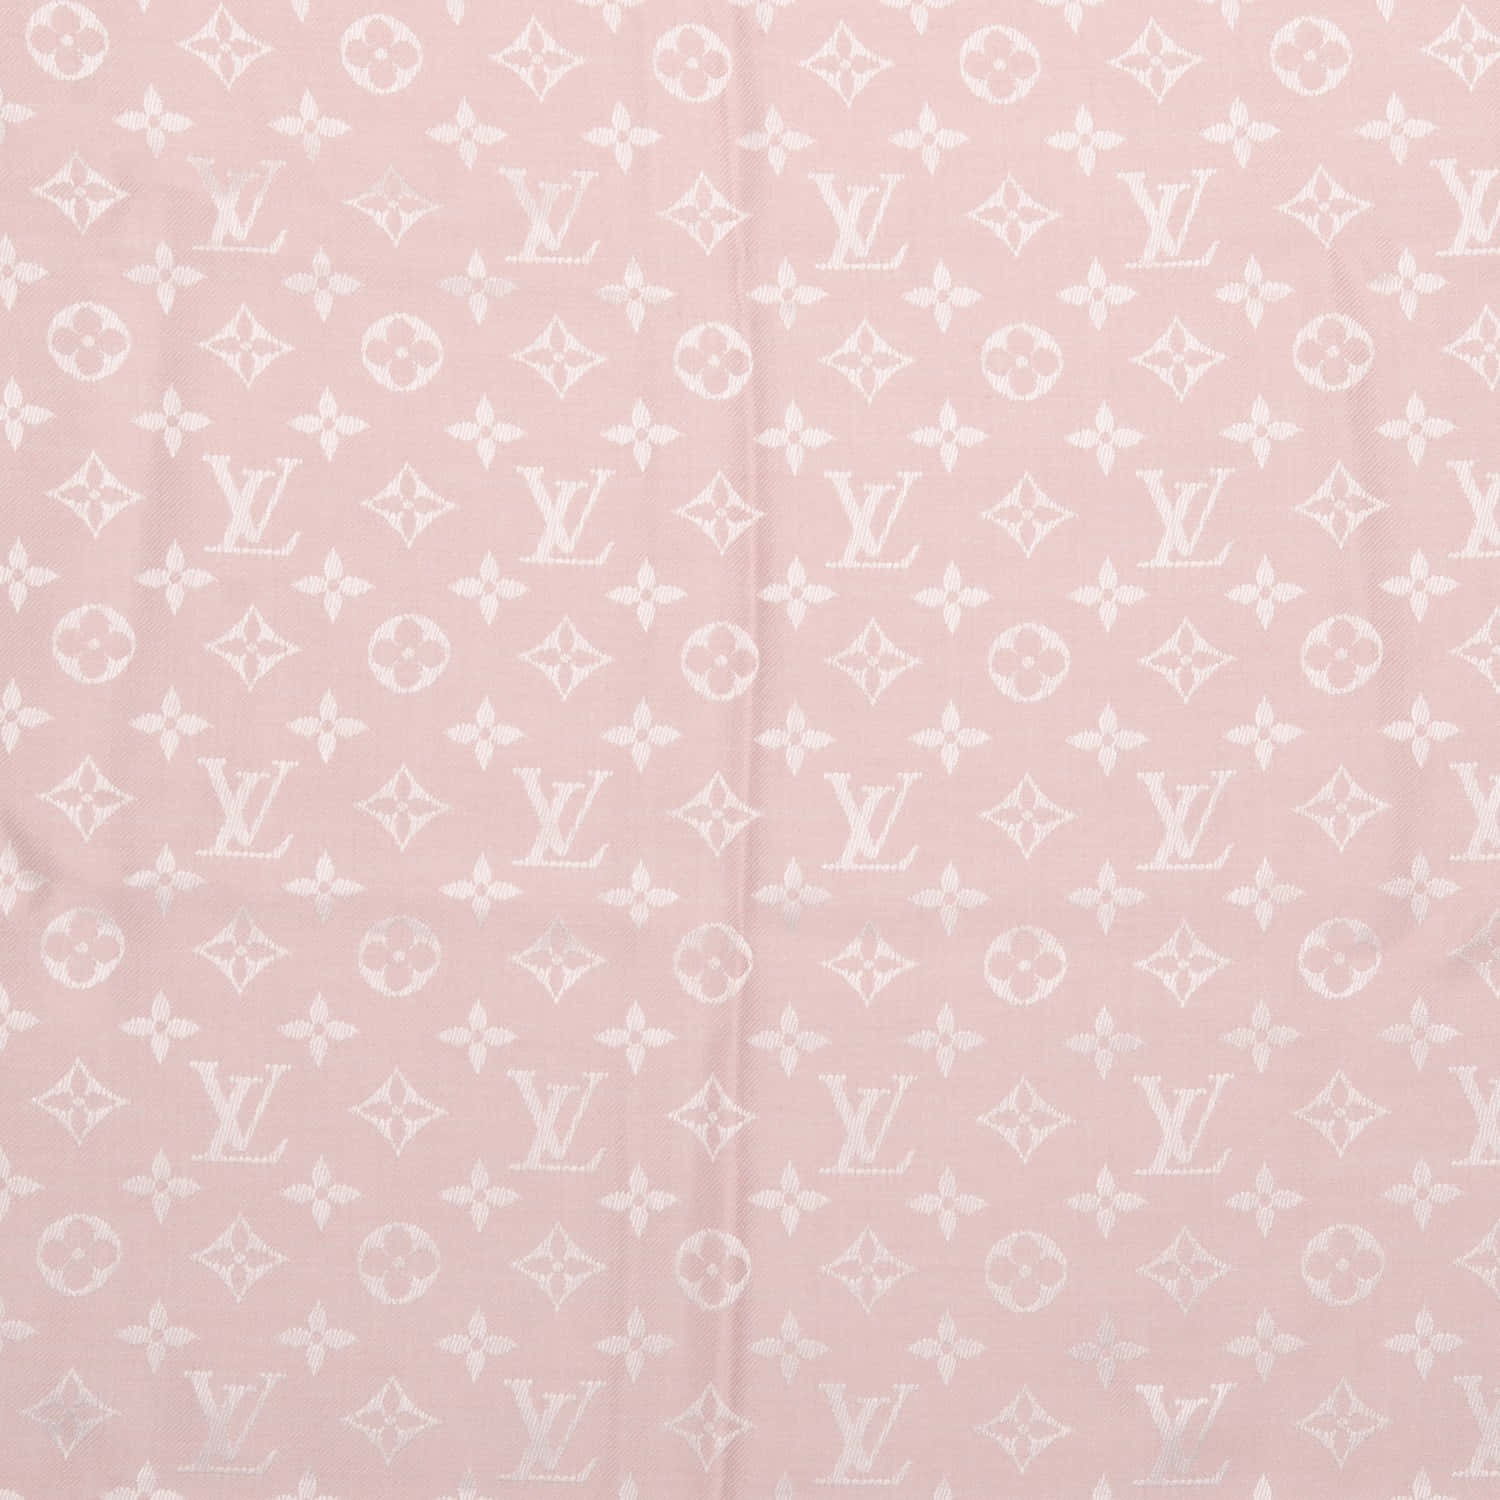 Echaun Vistazo A Esta Elegante Y A La Moda Bolsa Louis Vuitton Con Estampado Rosa De Monograma. Fondo de pantalla